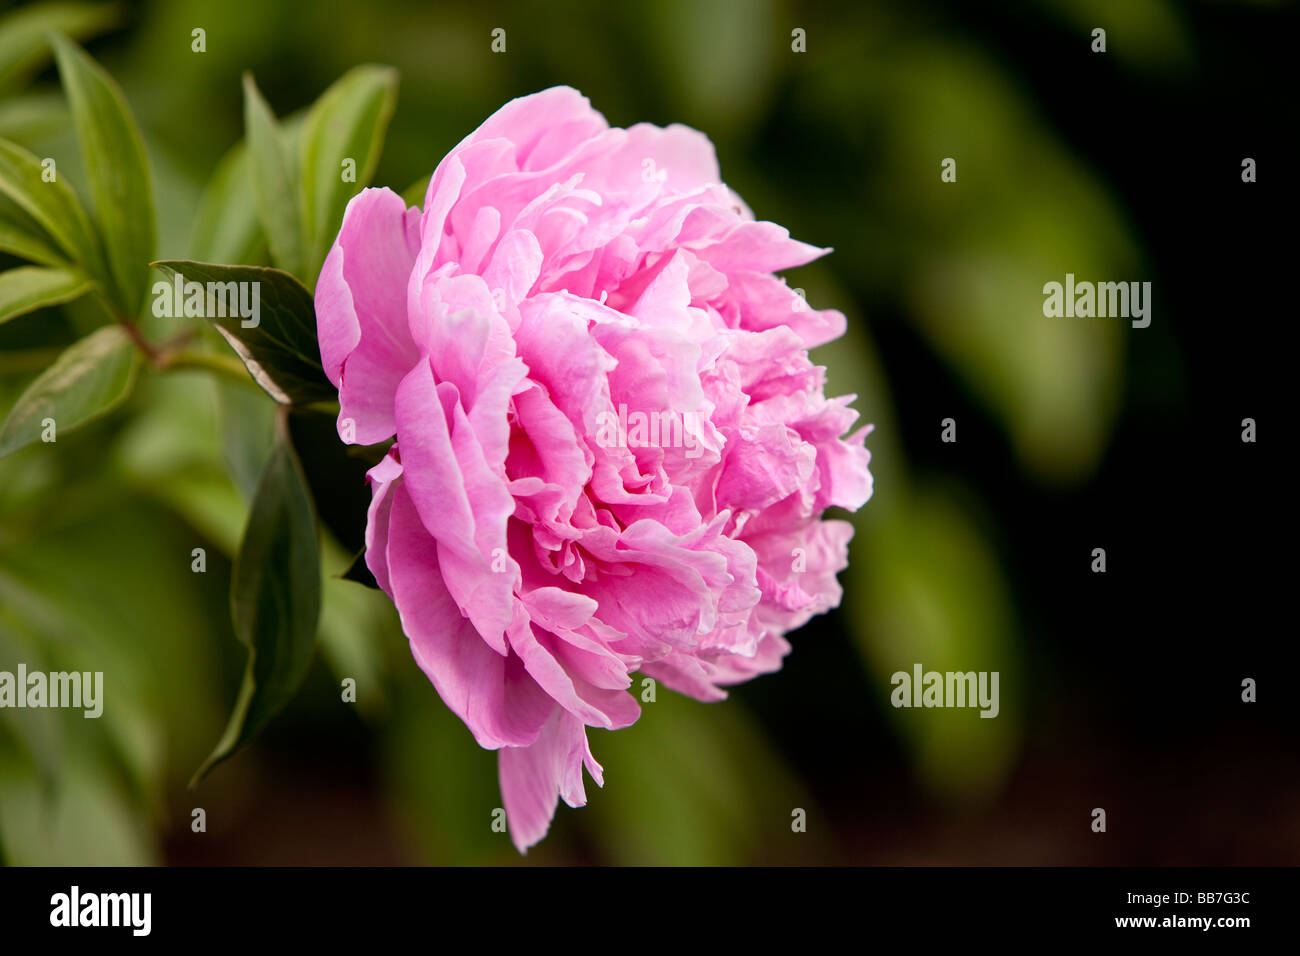 Ein rosa Pfingstrose - eine blühende Pflanze, die in der Gattung Paeonia - Die einzige Gattung in der Familie Paeoniaceae. Stockfoto